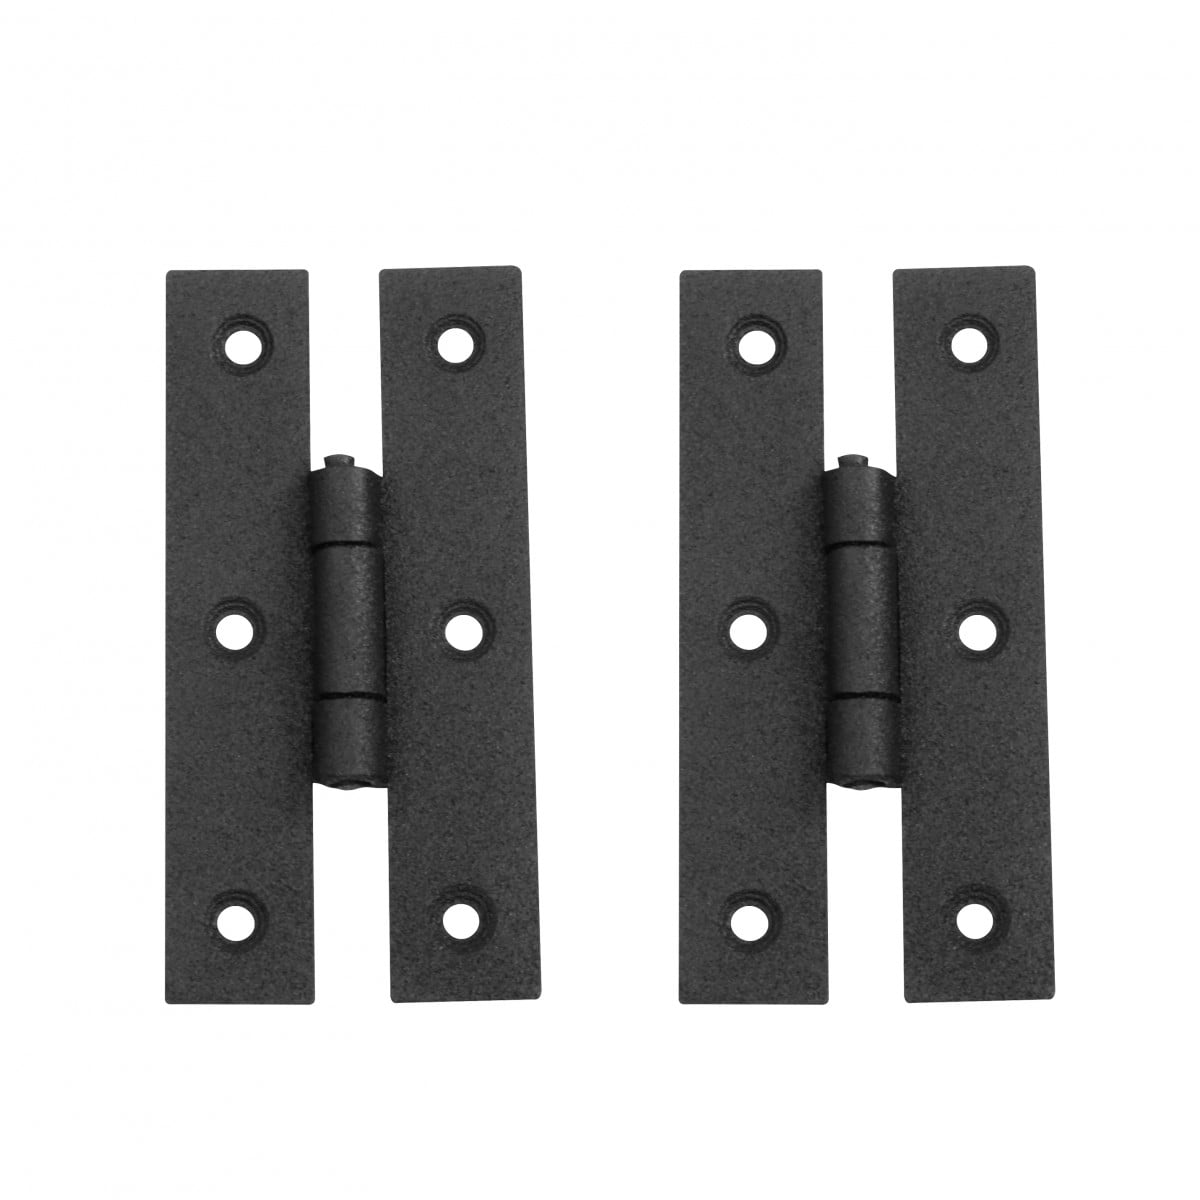 Wrought Iron Rustproof Cabinet Door/Gate Hinge Black 5 Inch Set Of 4